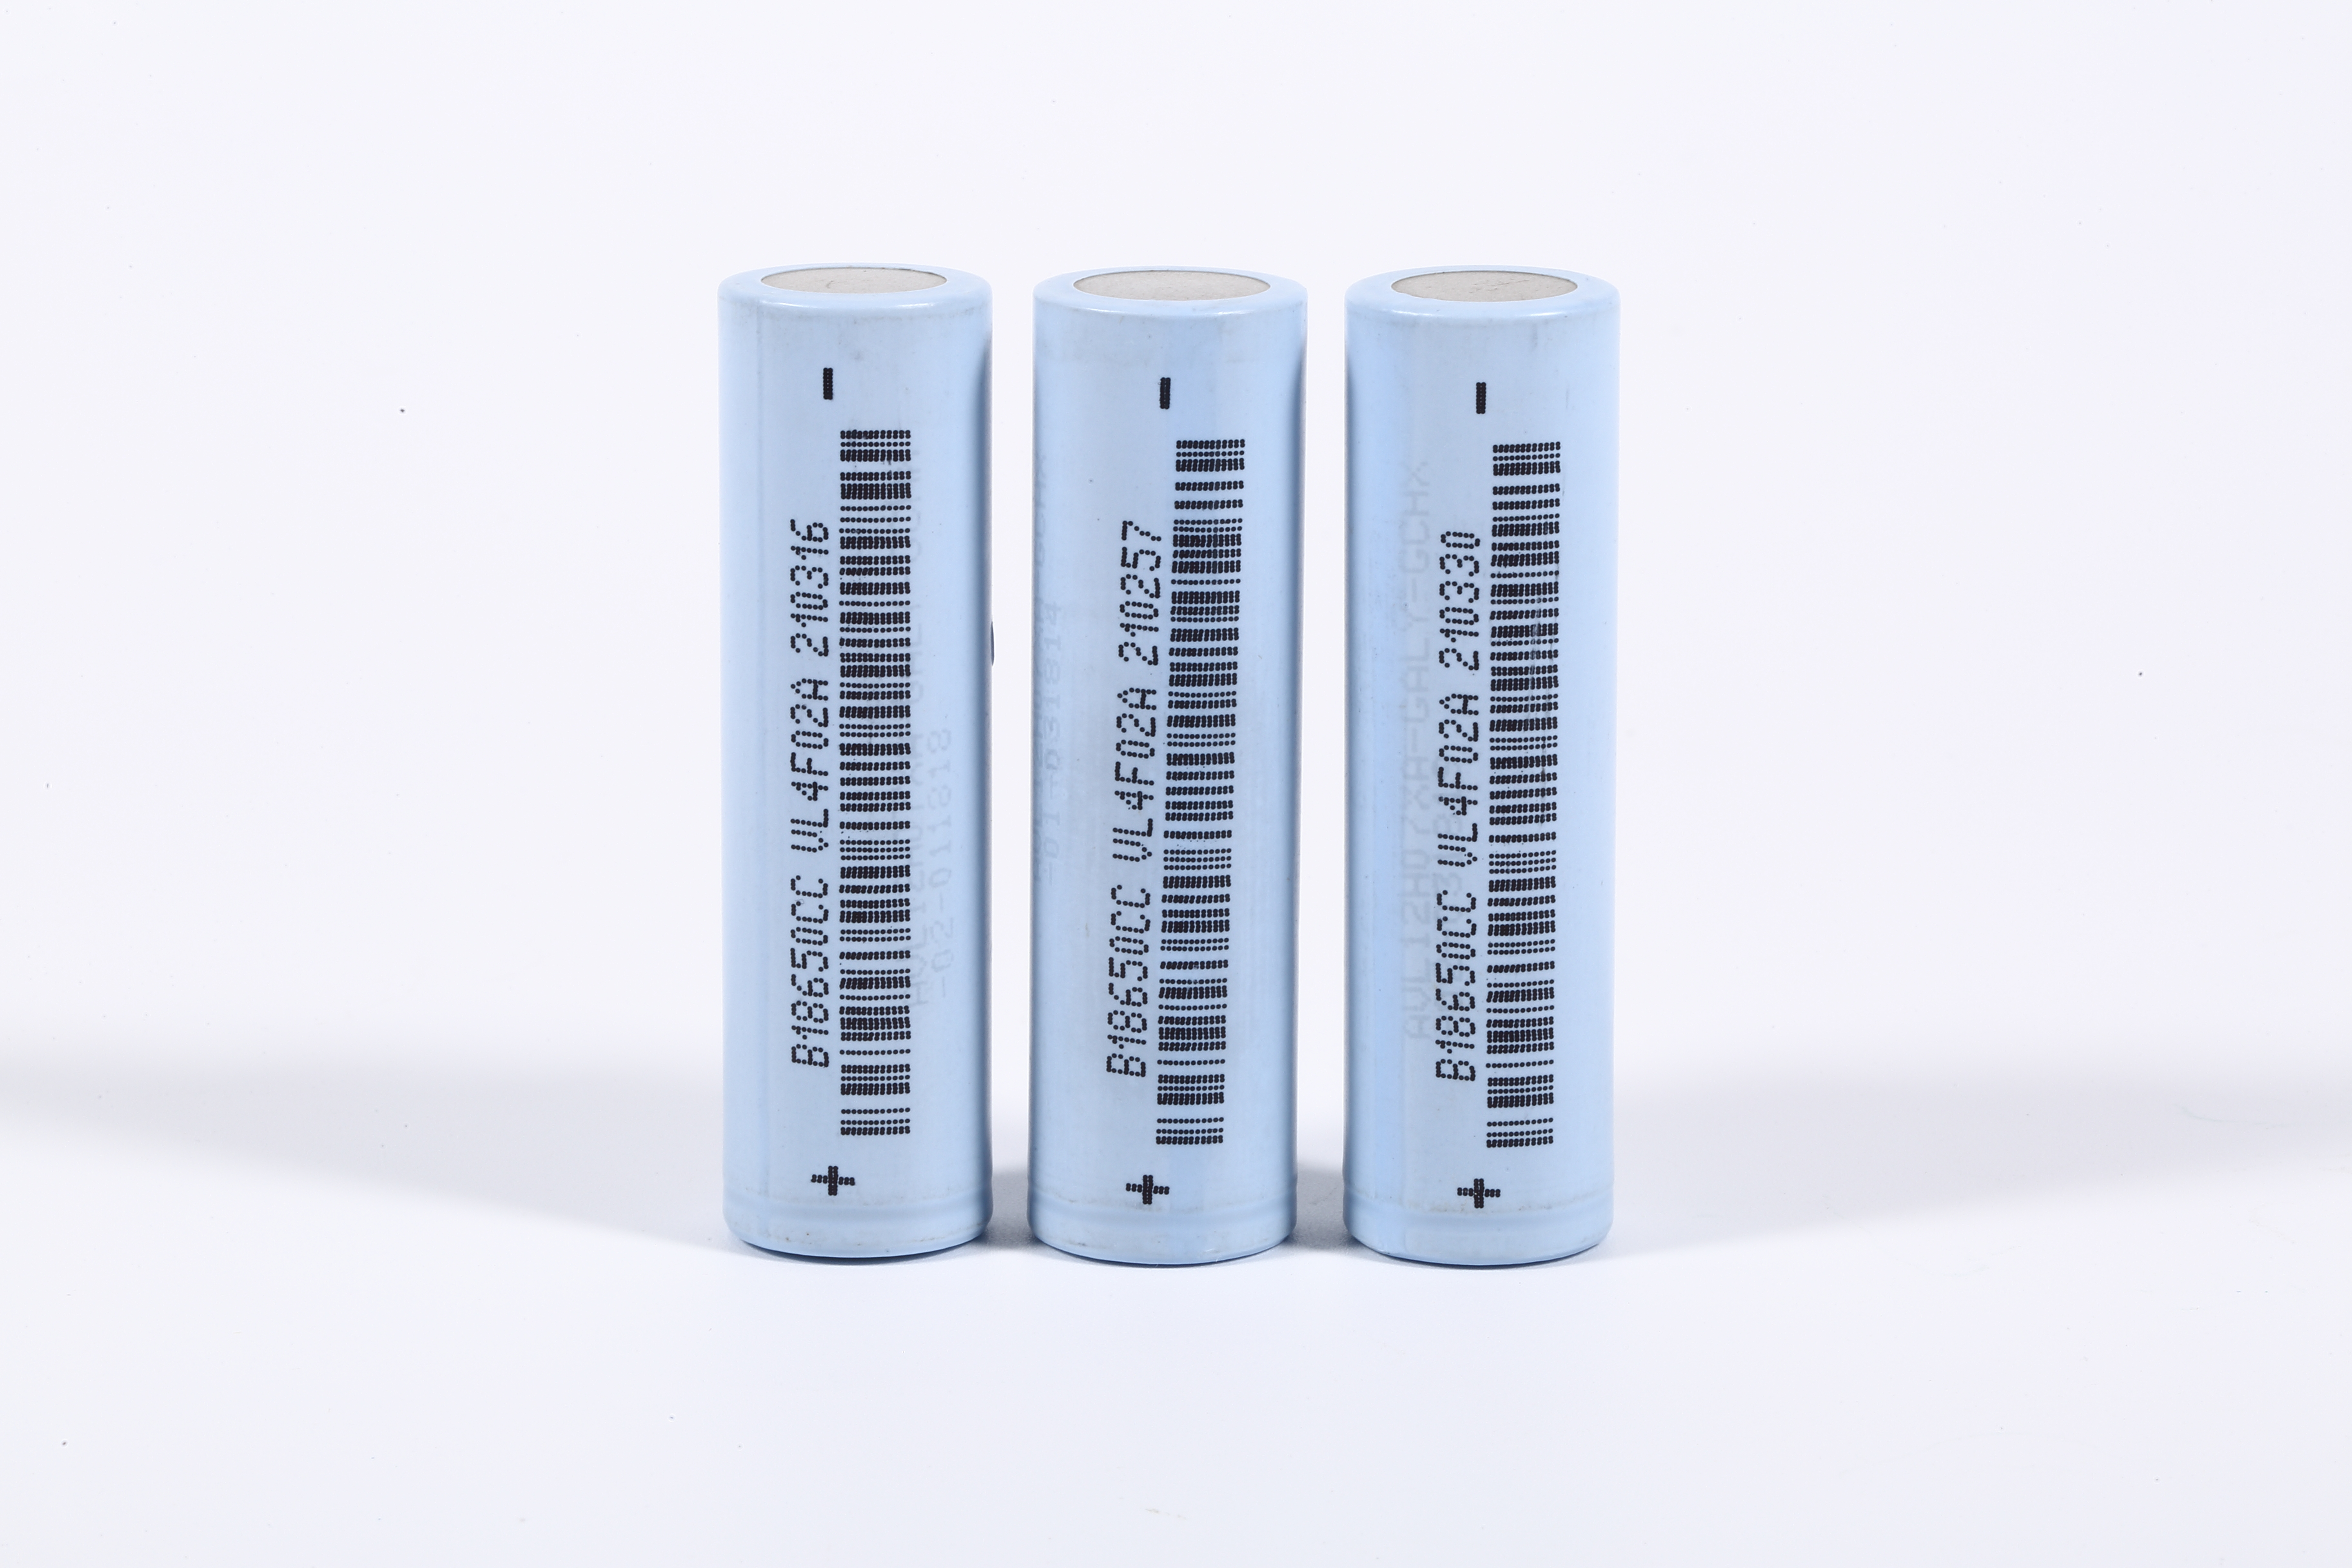 Baterias 18650 azuis de 3,6 volts para ebike